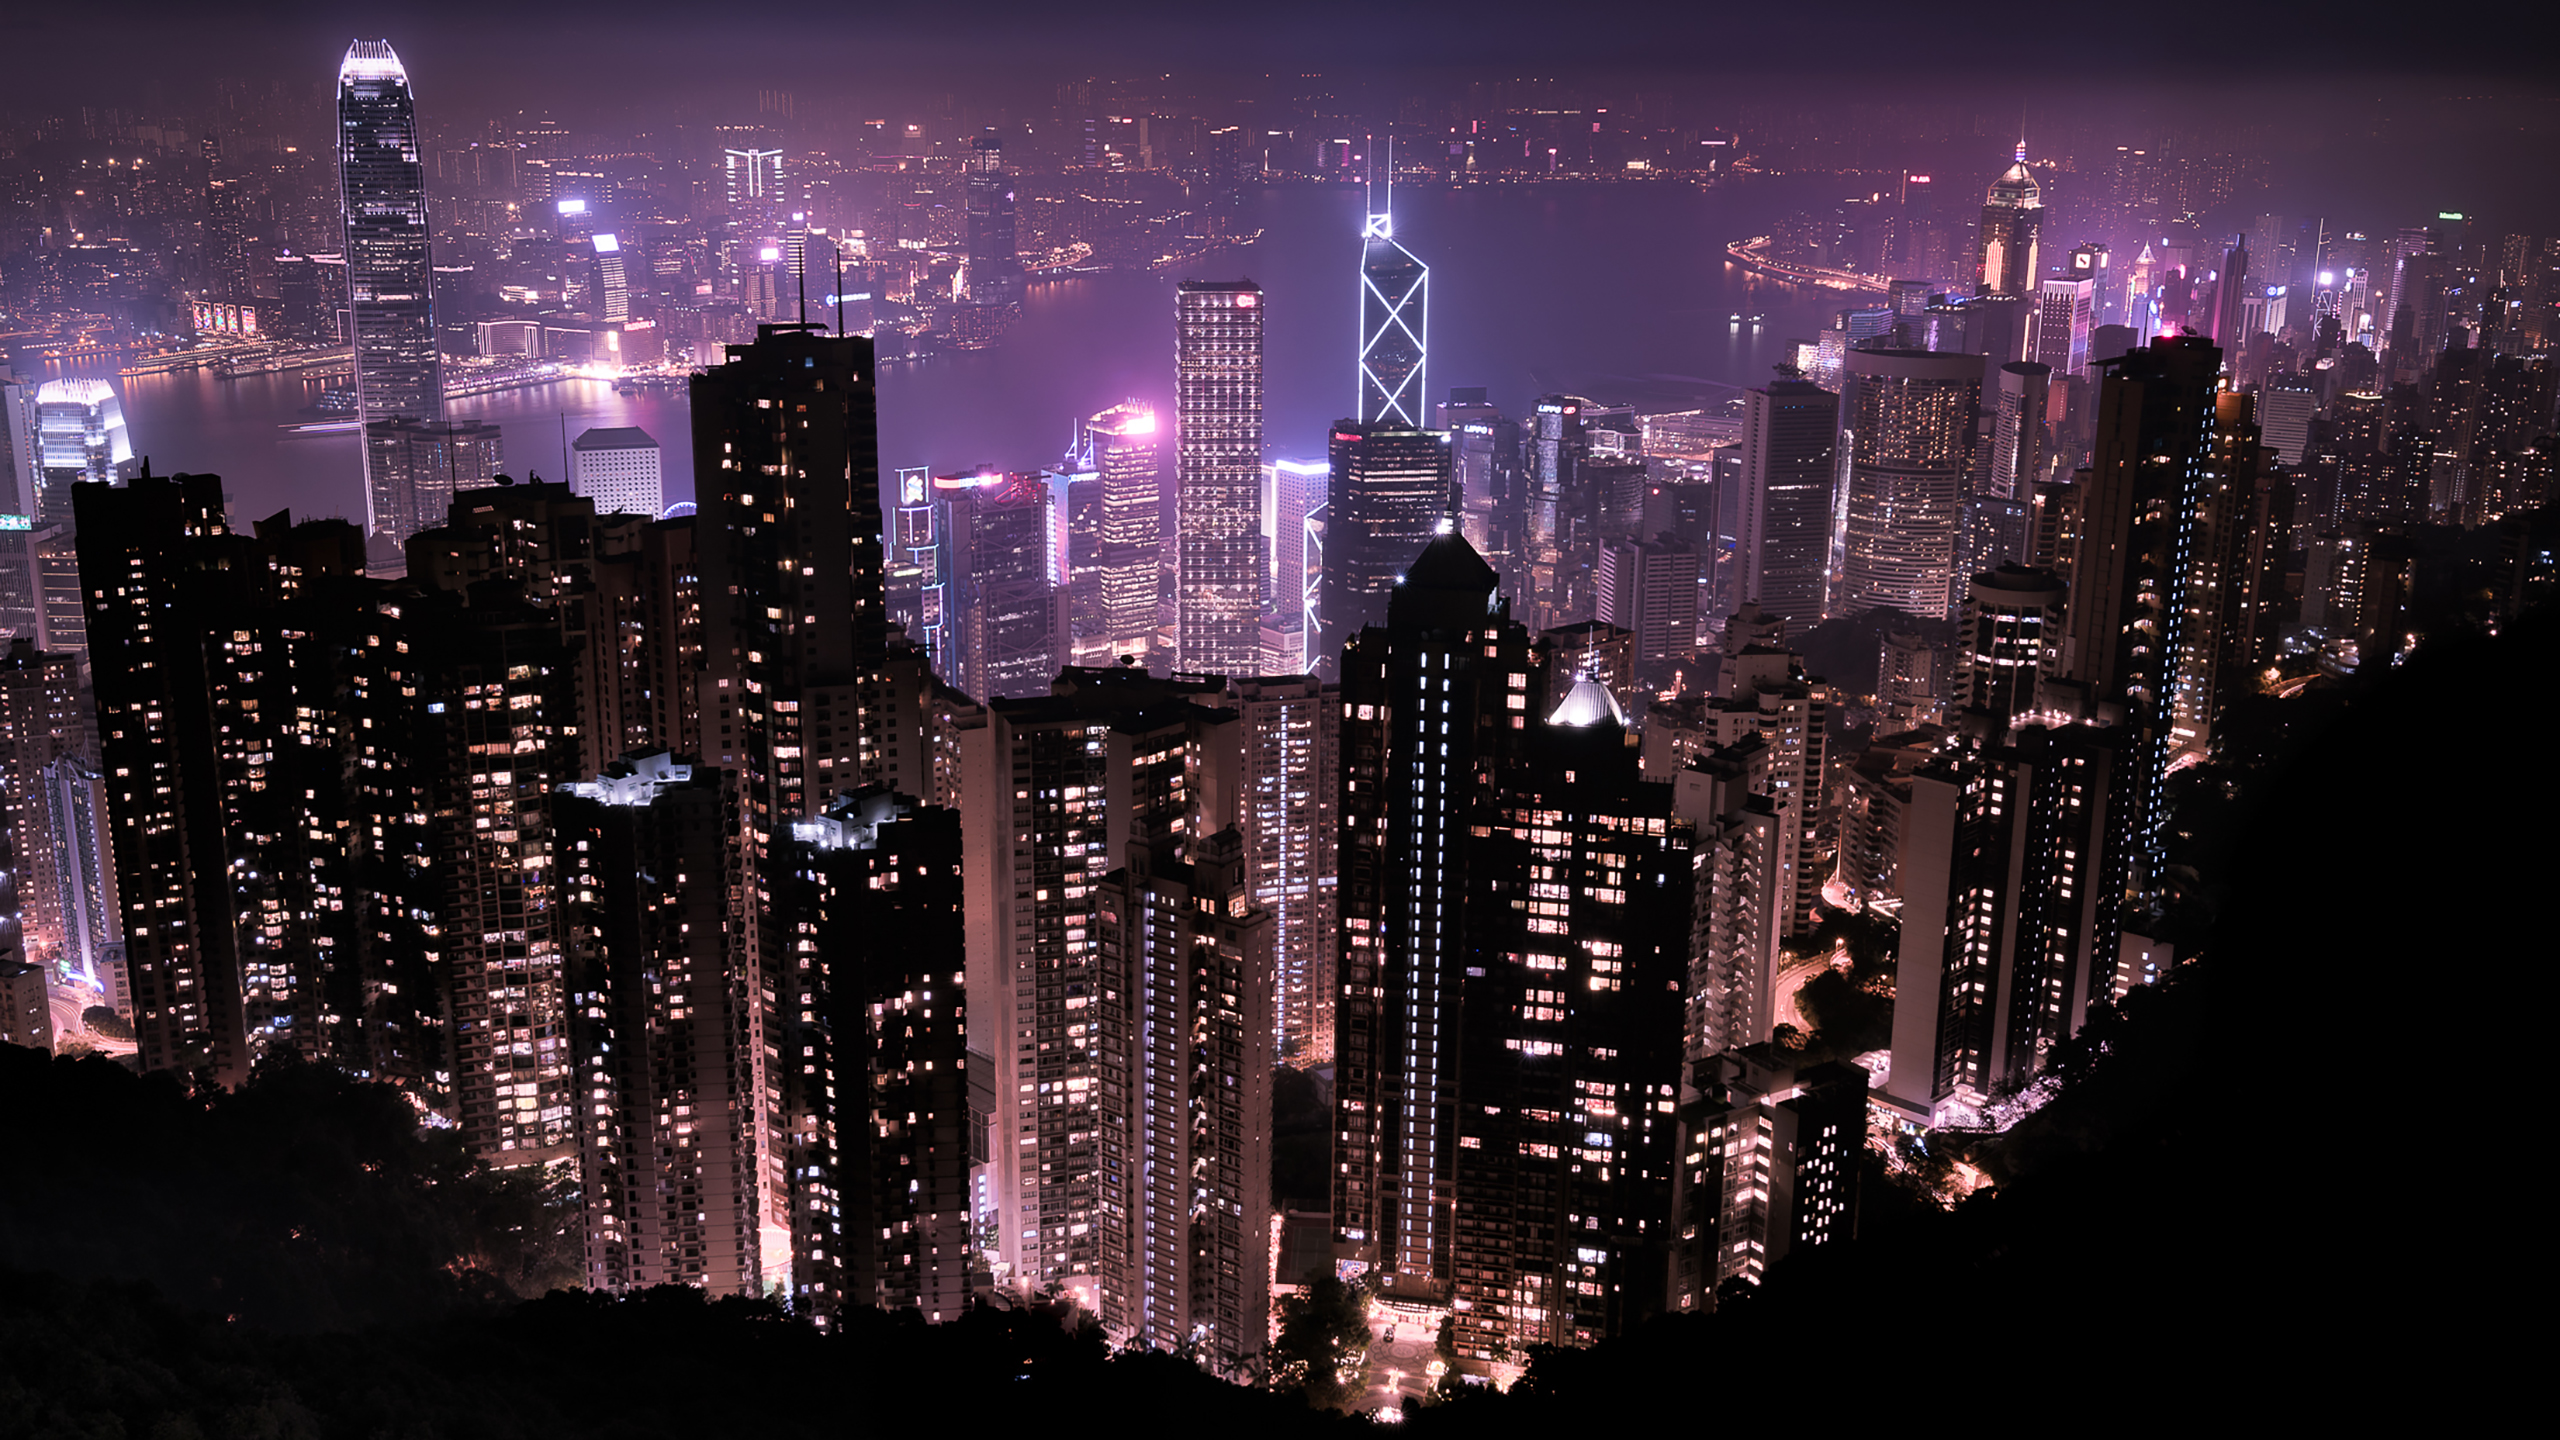 Hong Kong Skyline at Night Wallpapers